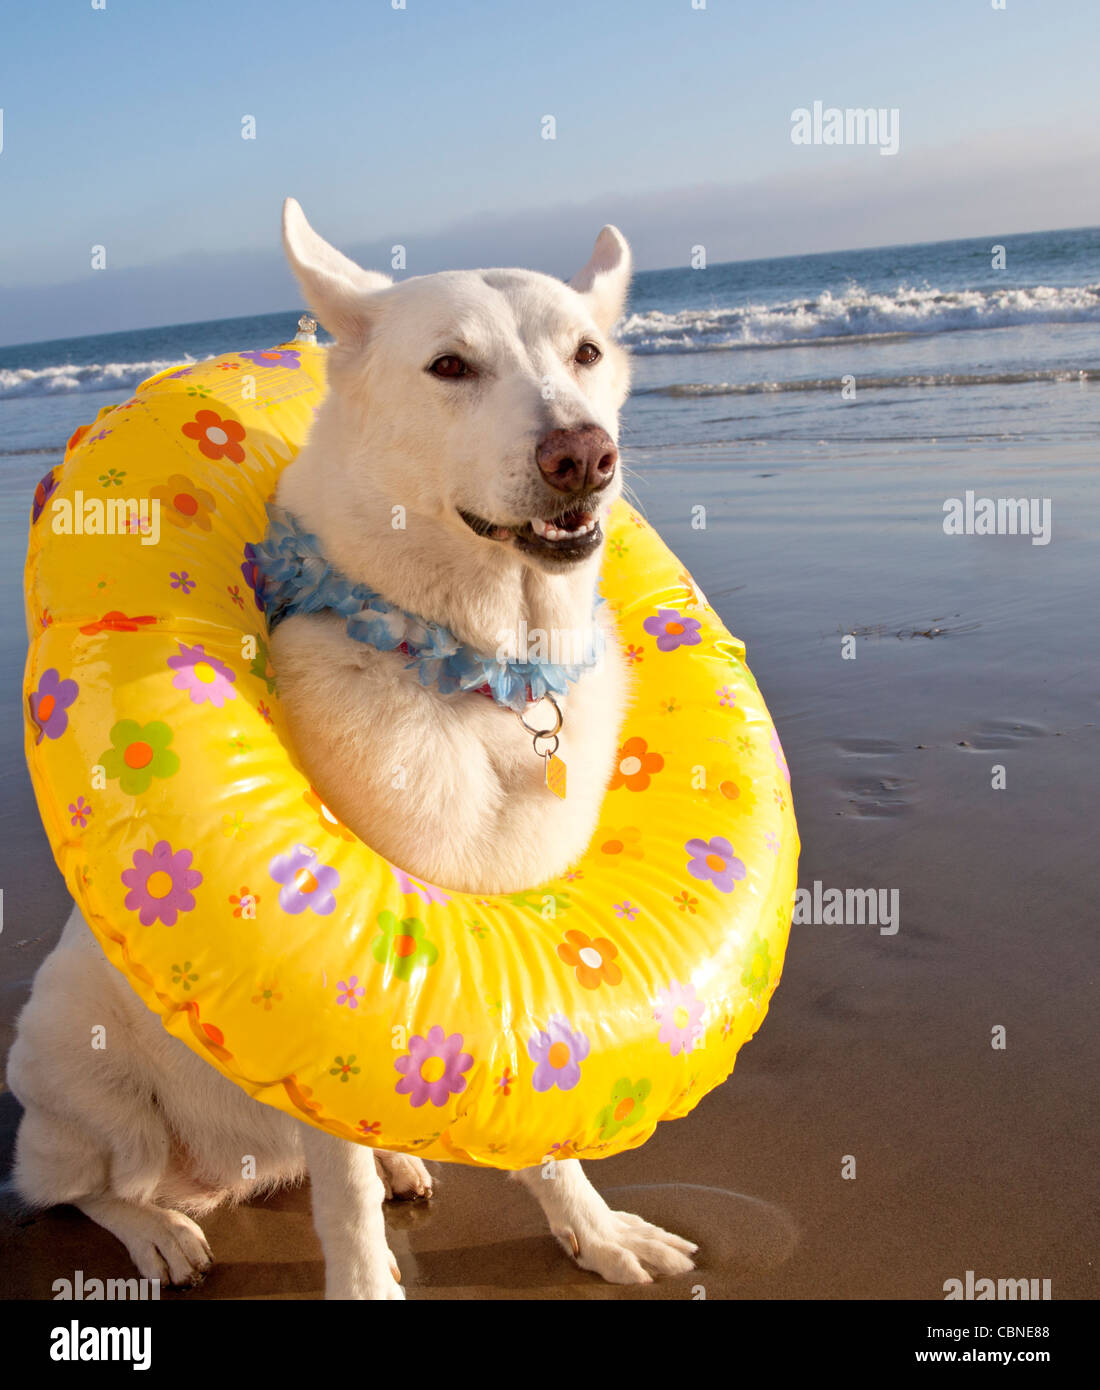 Hund am Strand tragen Schwimmring Stockfotografie - Alamy